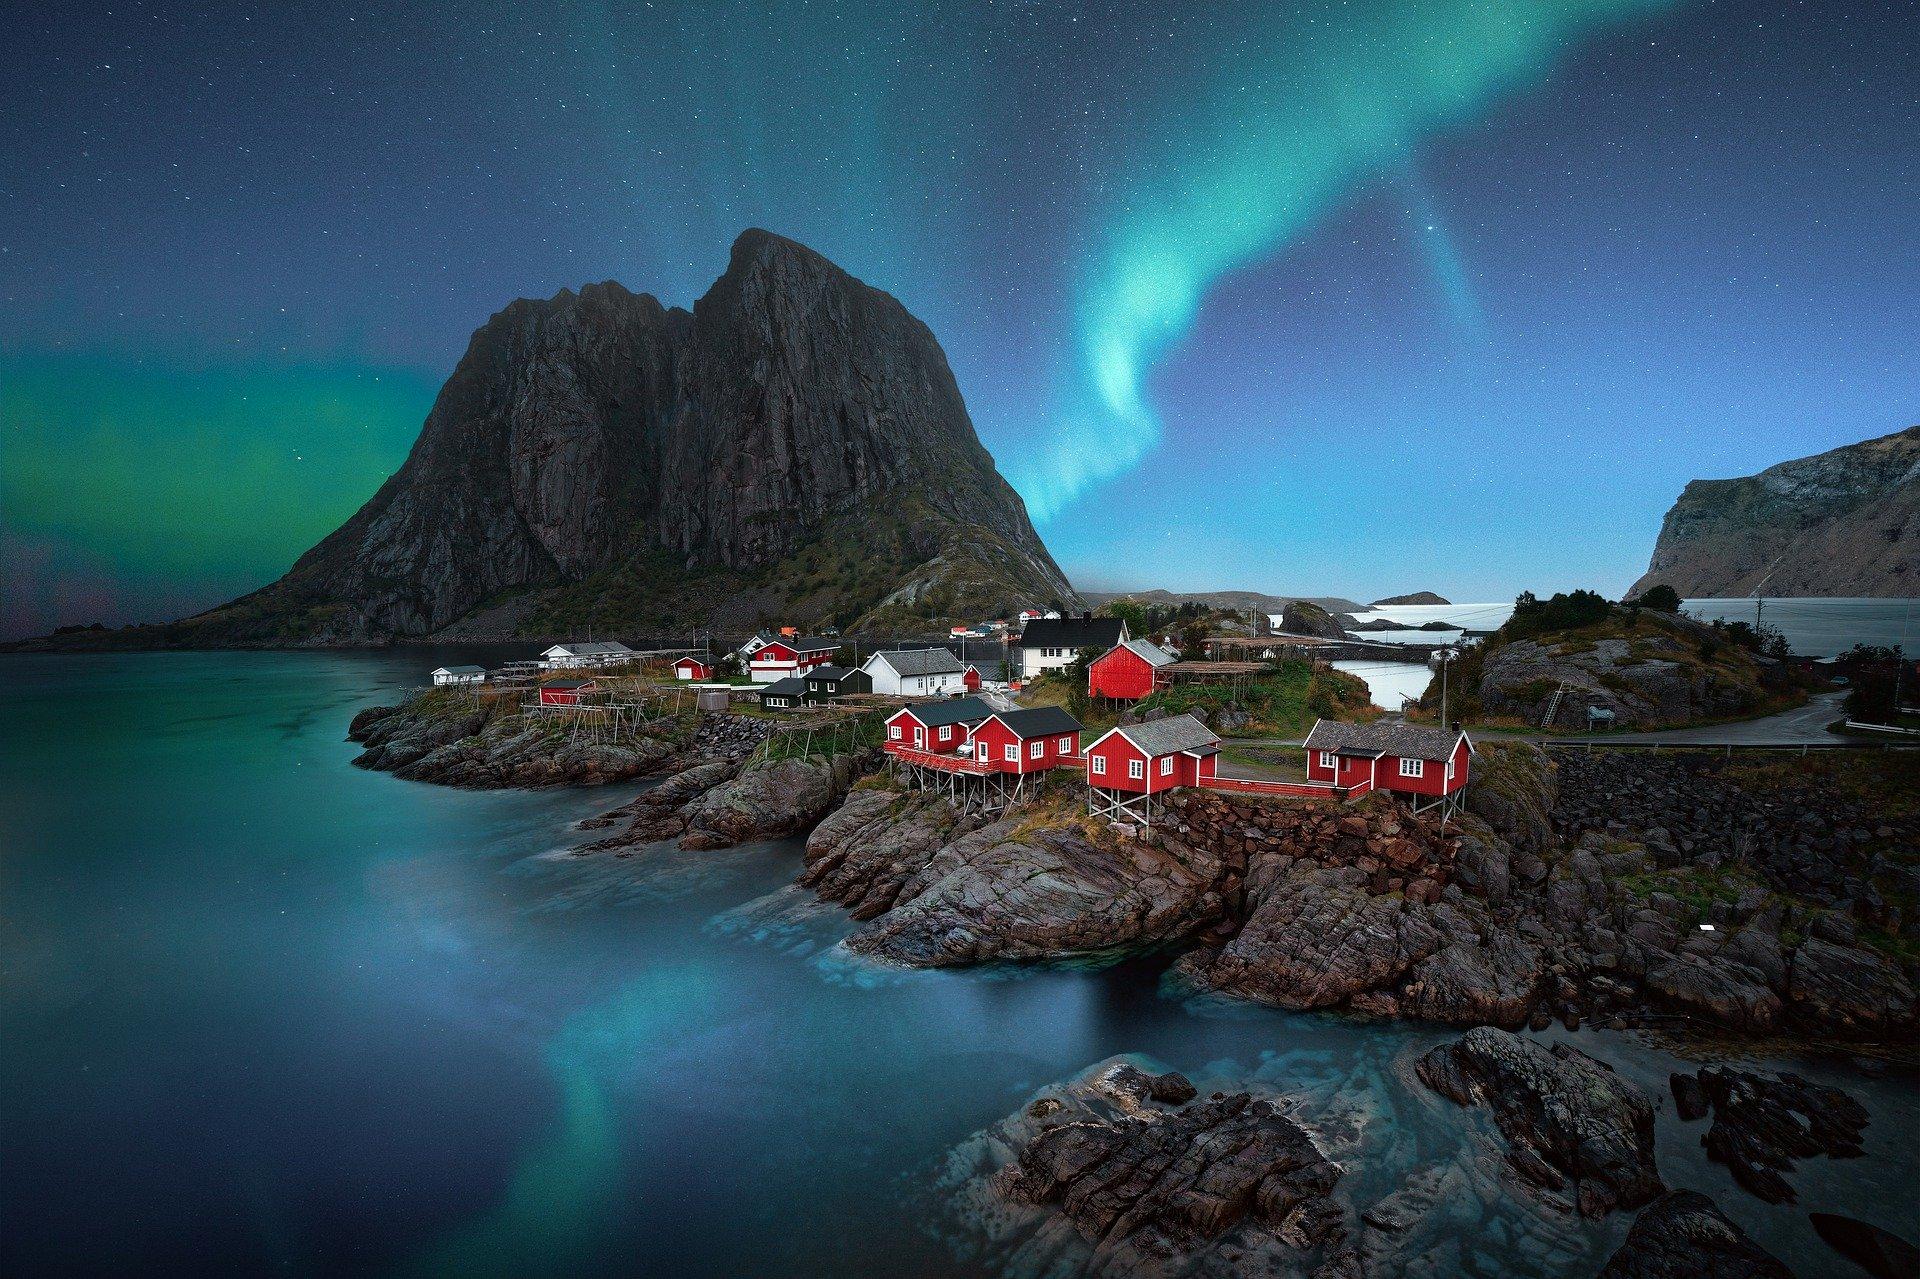 Πρωτοχρονιά στη Νορβηγία παρατηρώντας το Βόρειο Σέλας | Imagination Travel